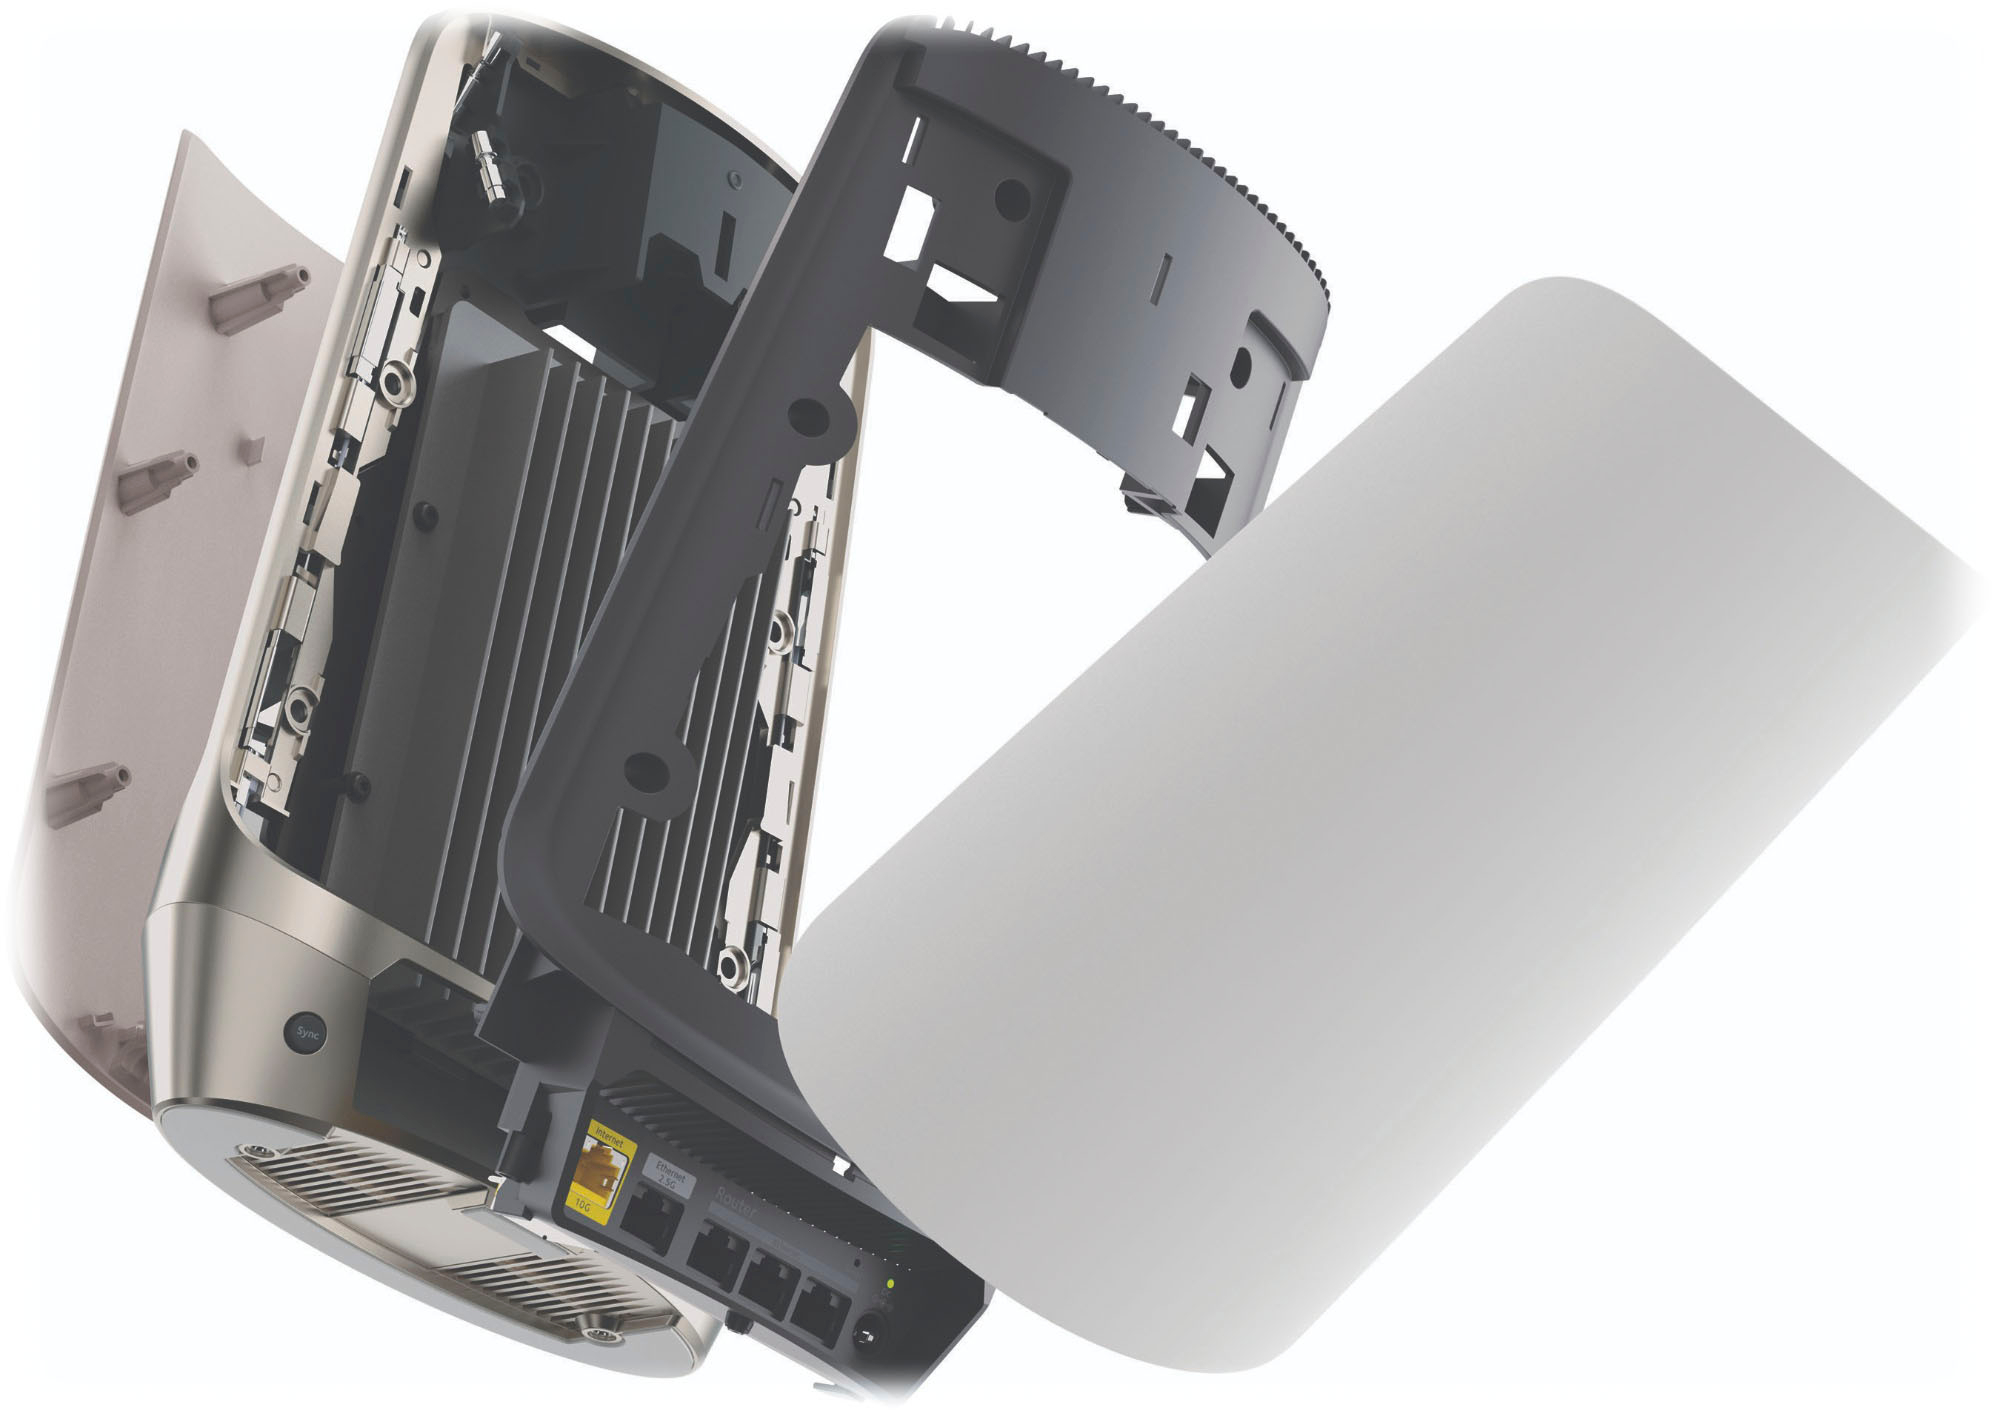 Orbi 960 WIFI 6E MESH (RBKE960 Series) from Netgear – 10GbE WiFi